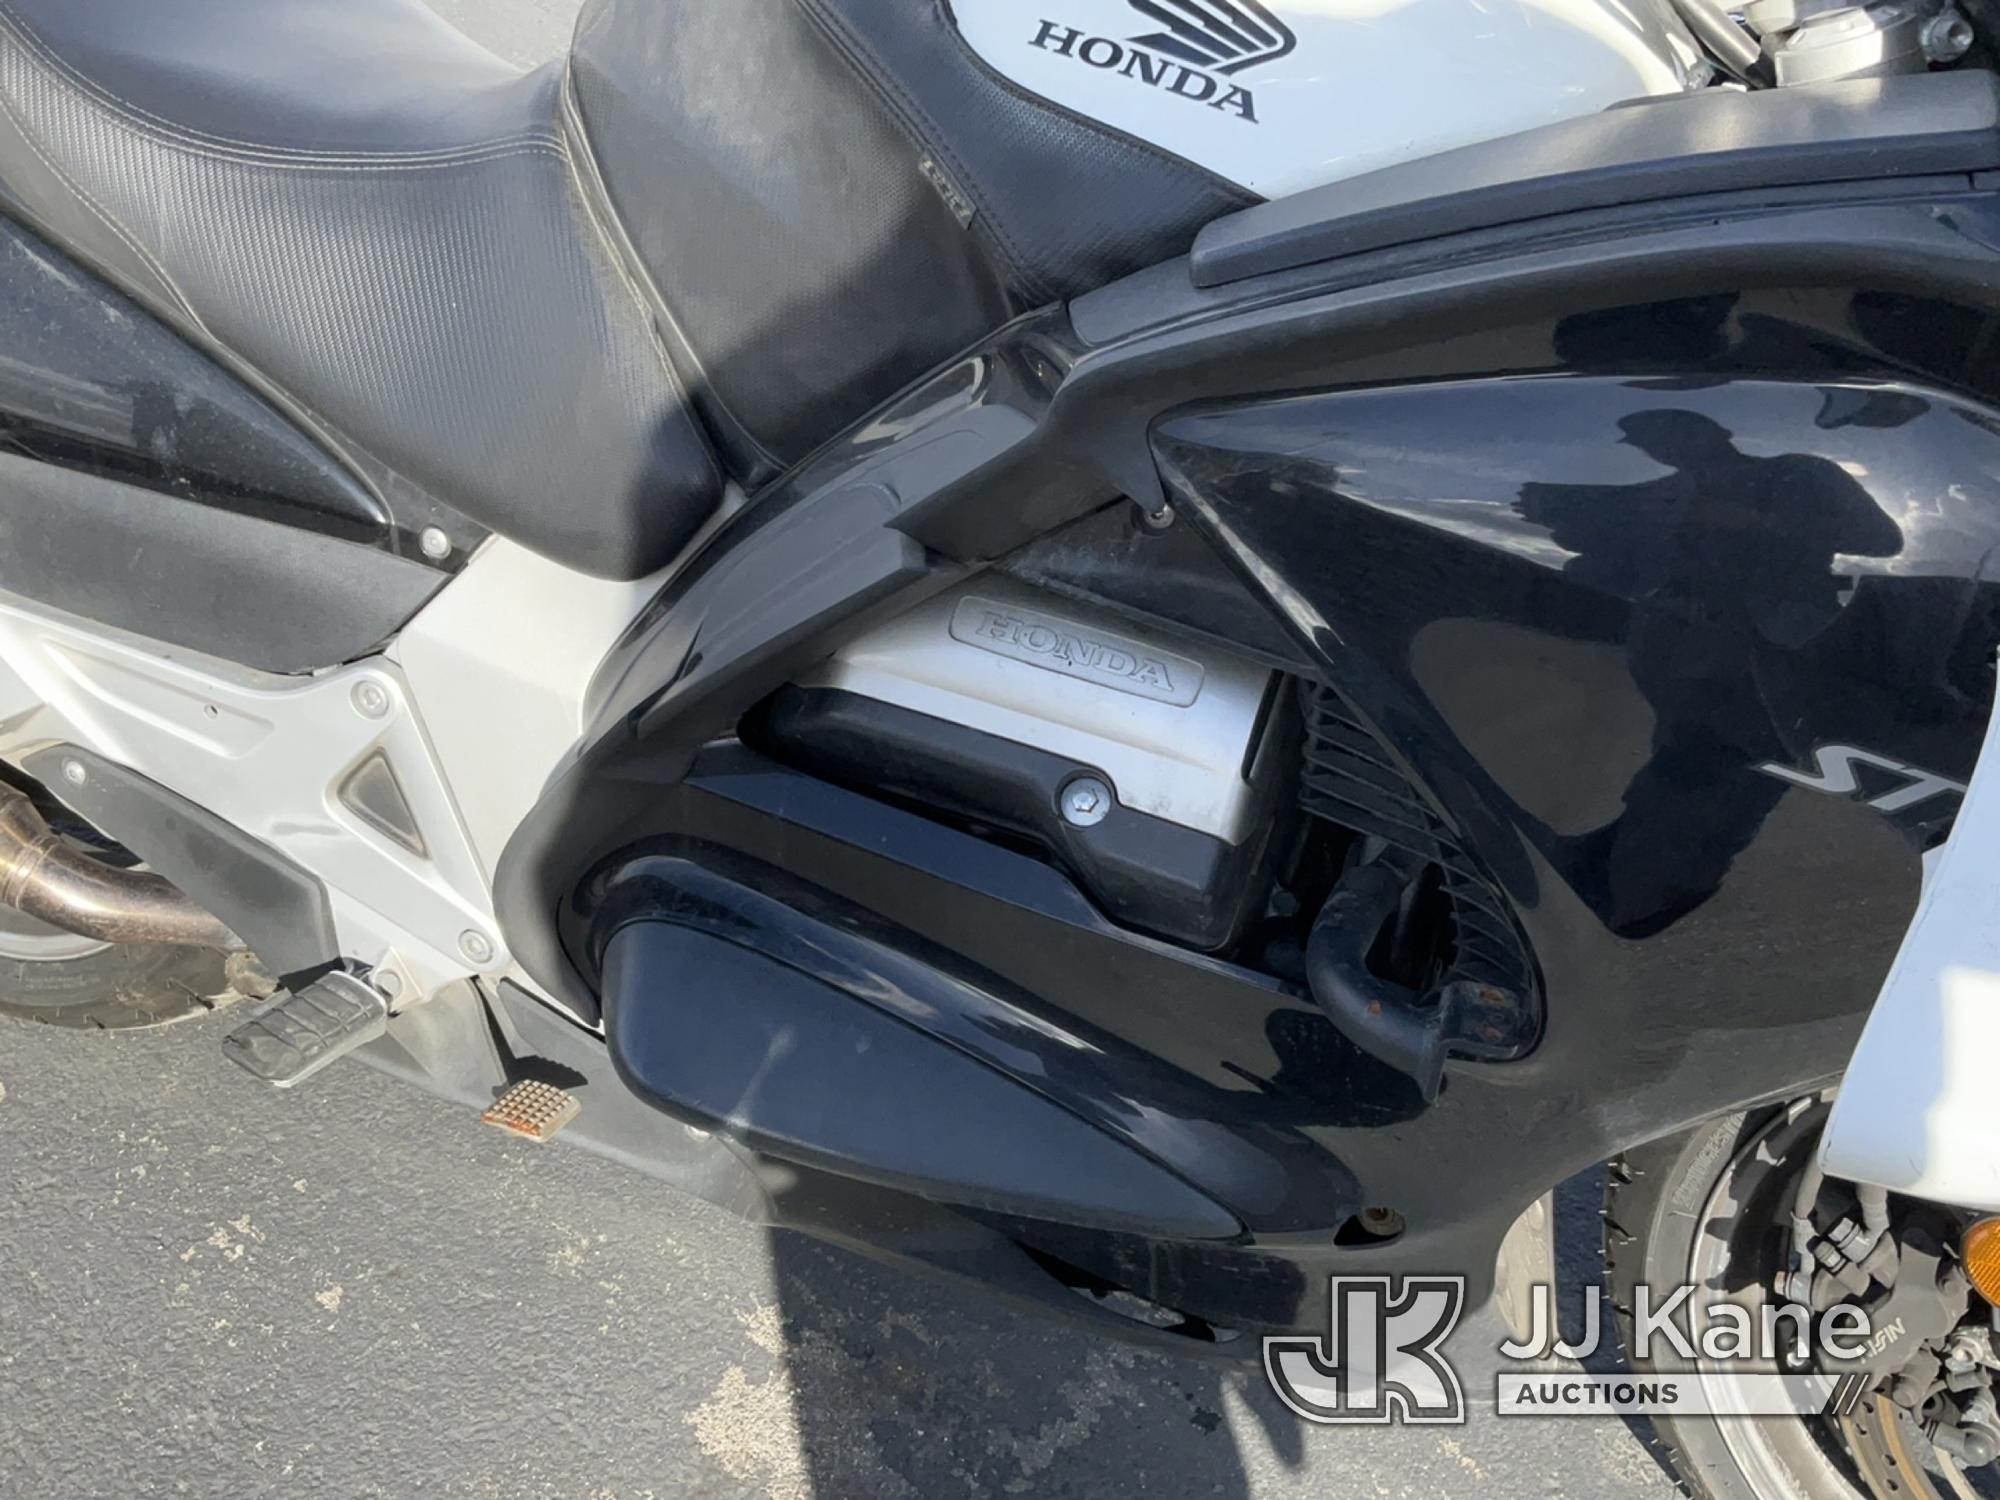 (Jurupa Valley, CA) 2014 Honda ST1300 PA Motorcycle Runs & Moves , Broken Mirror , Running Rough